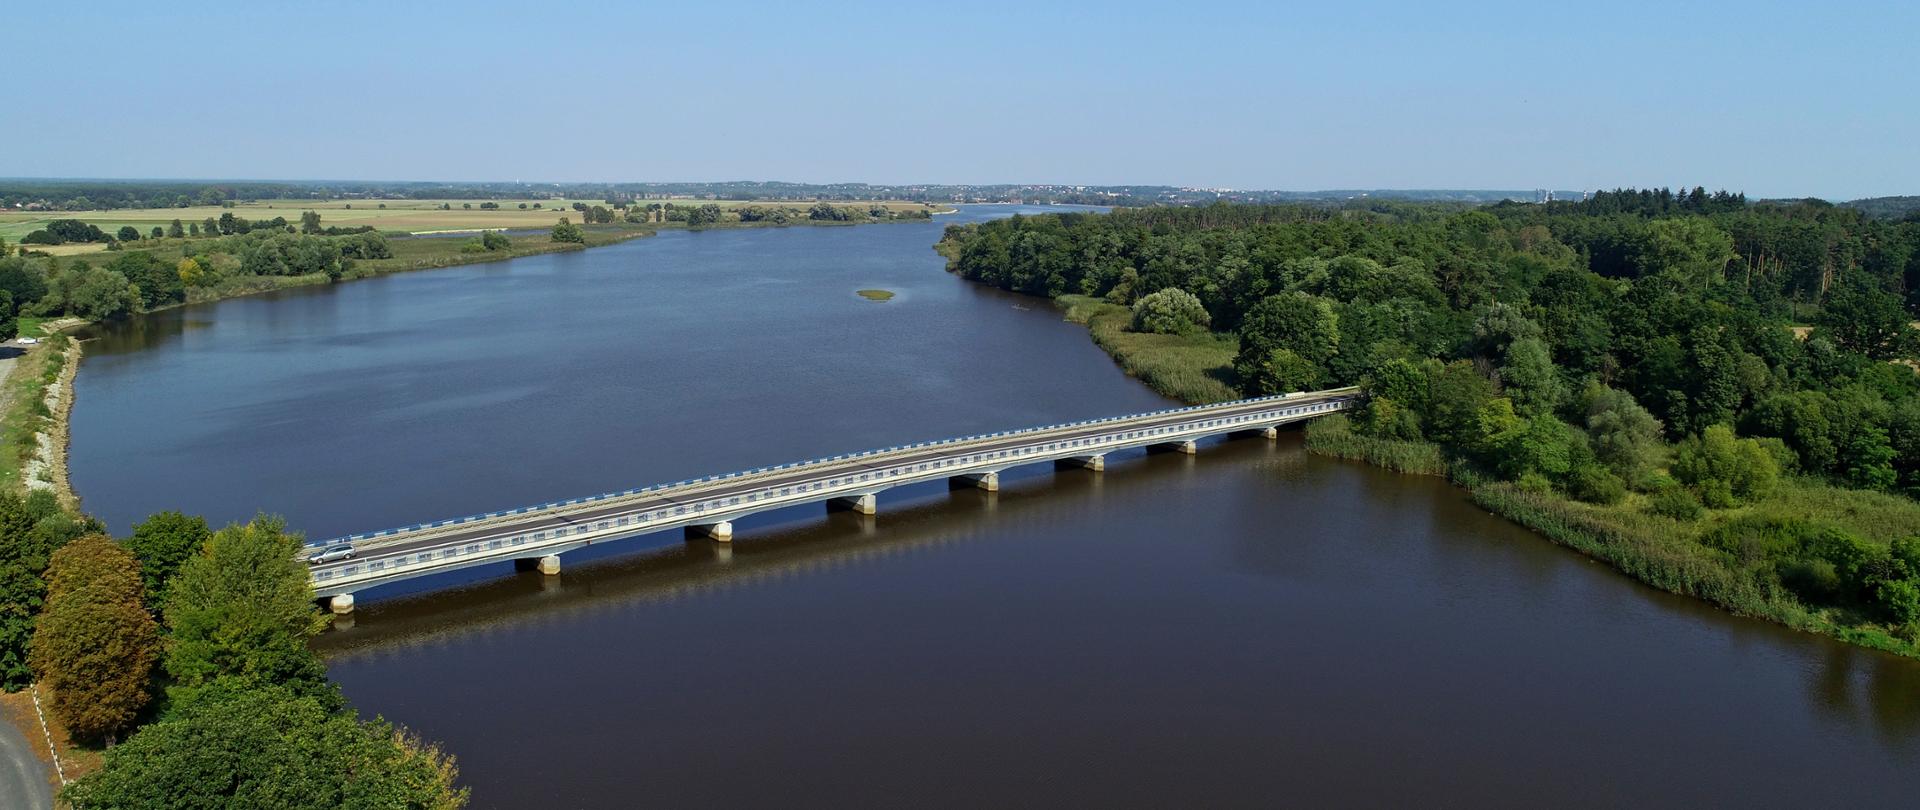 Na zdjęciu widać most drogowy dziewięcioprzęsłowy na rzece. Brzegi rzeki porośnięte lasami.